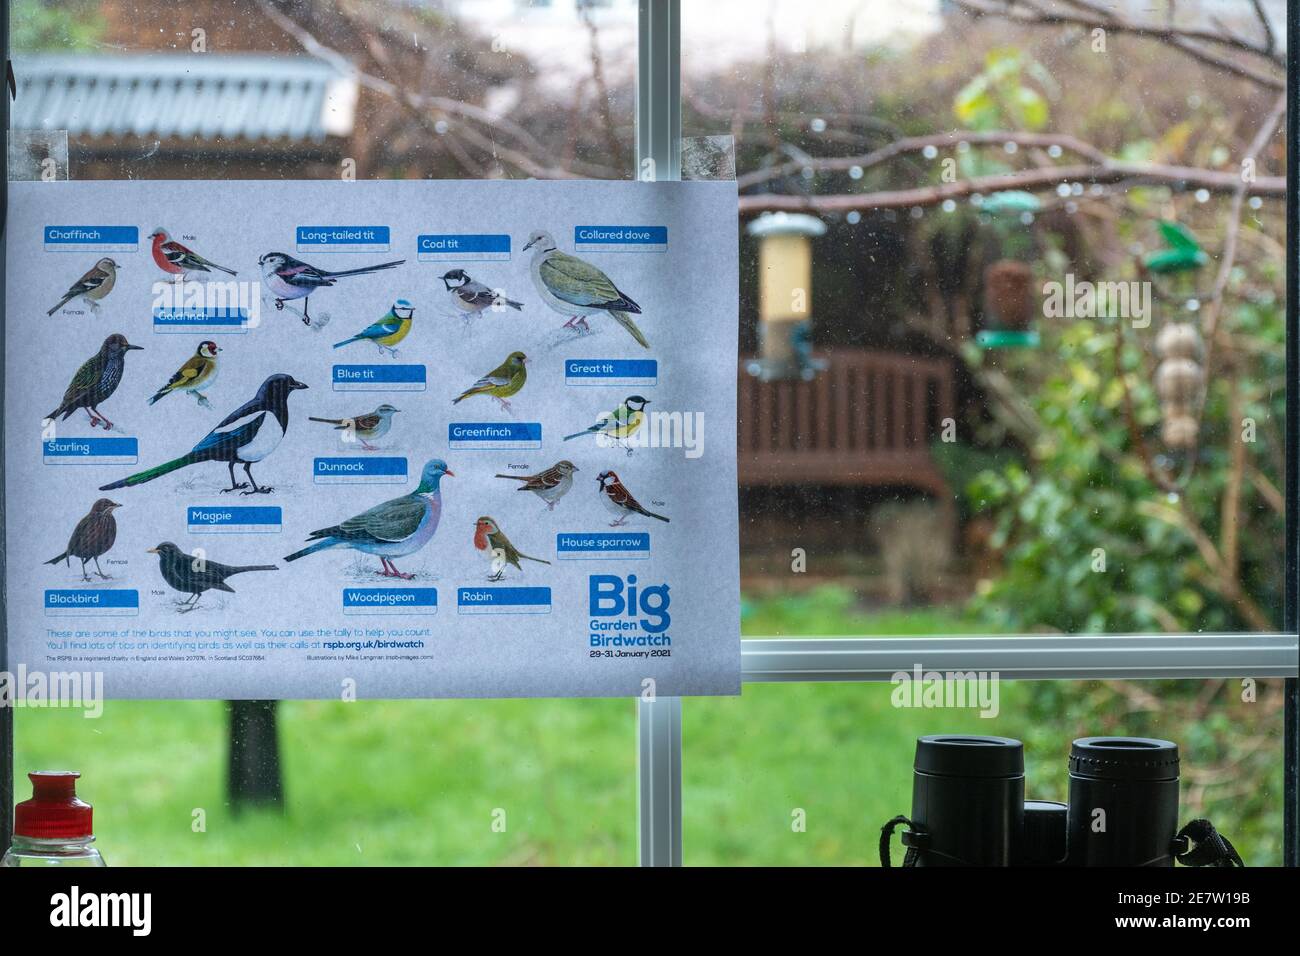 Partecipazione al Big Garden Birdwatch con un ID RSPB (identificazione) nella finestra della cucina, Regno Unito, gennaio 2021 Foto Stock